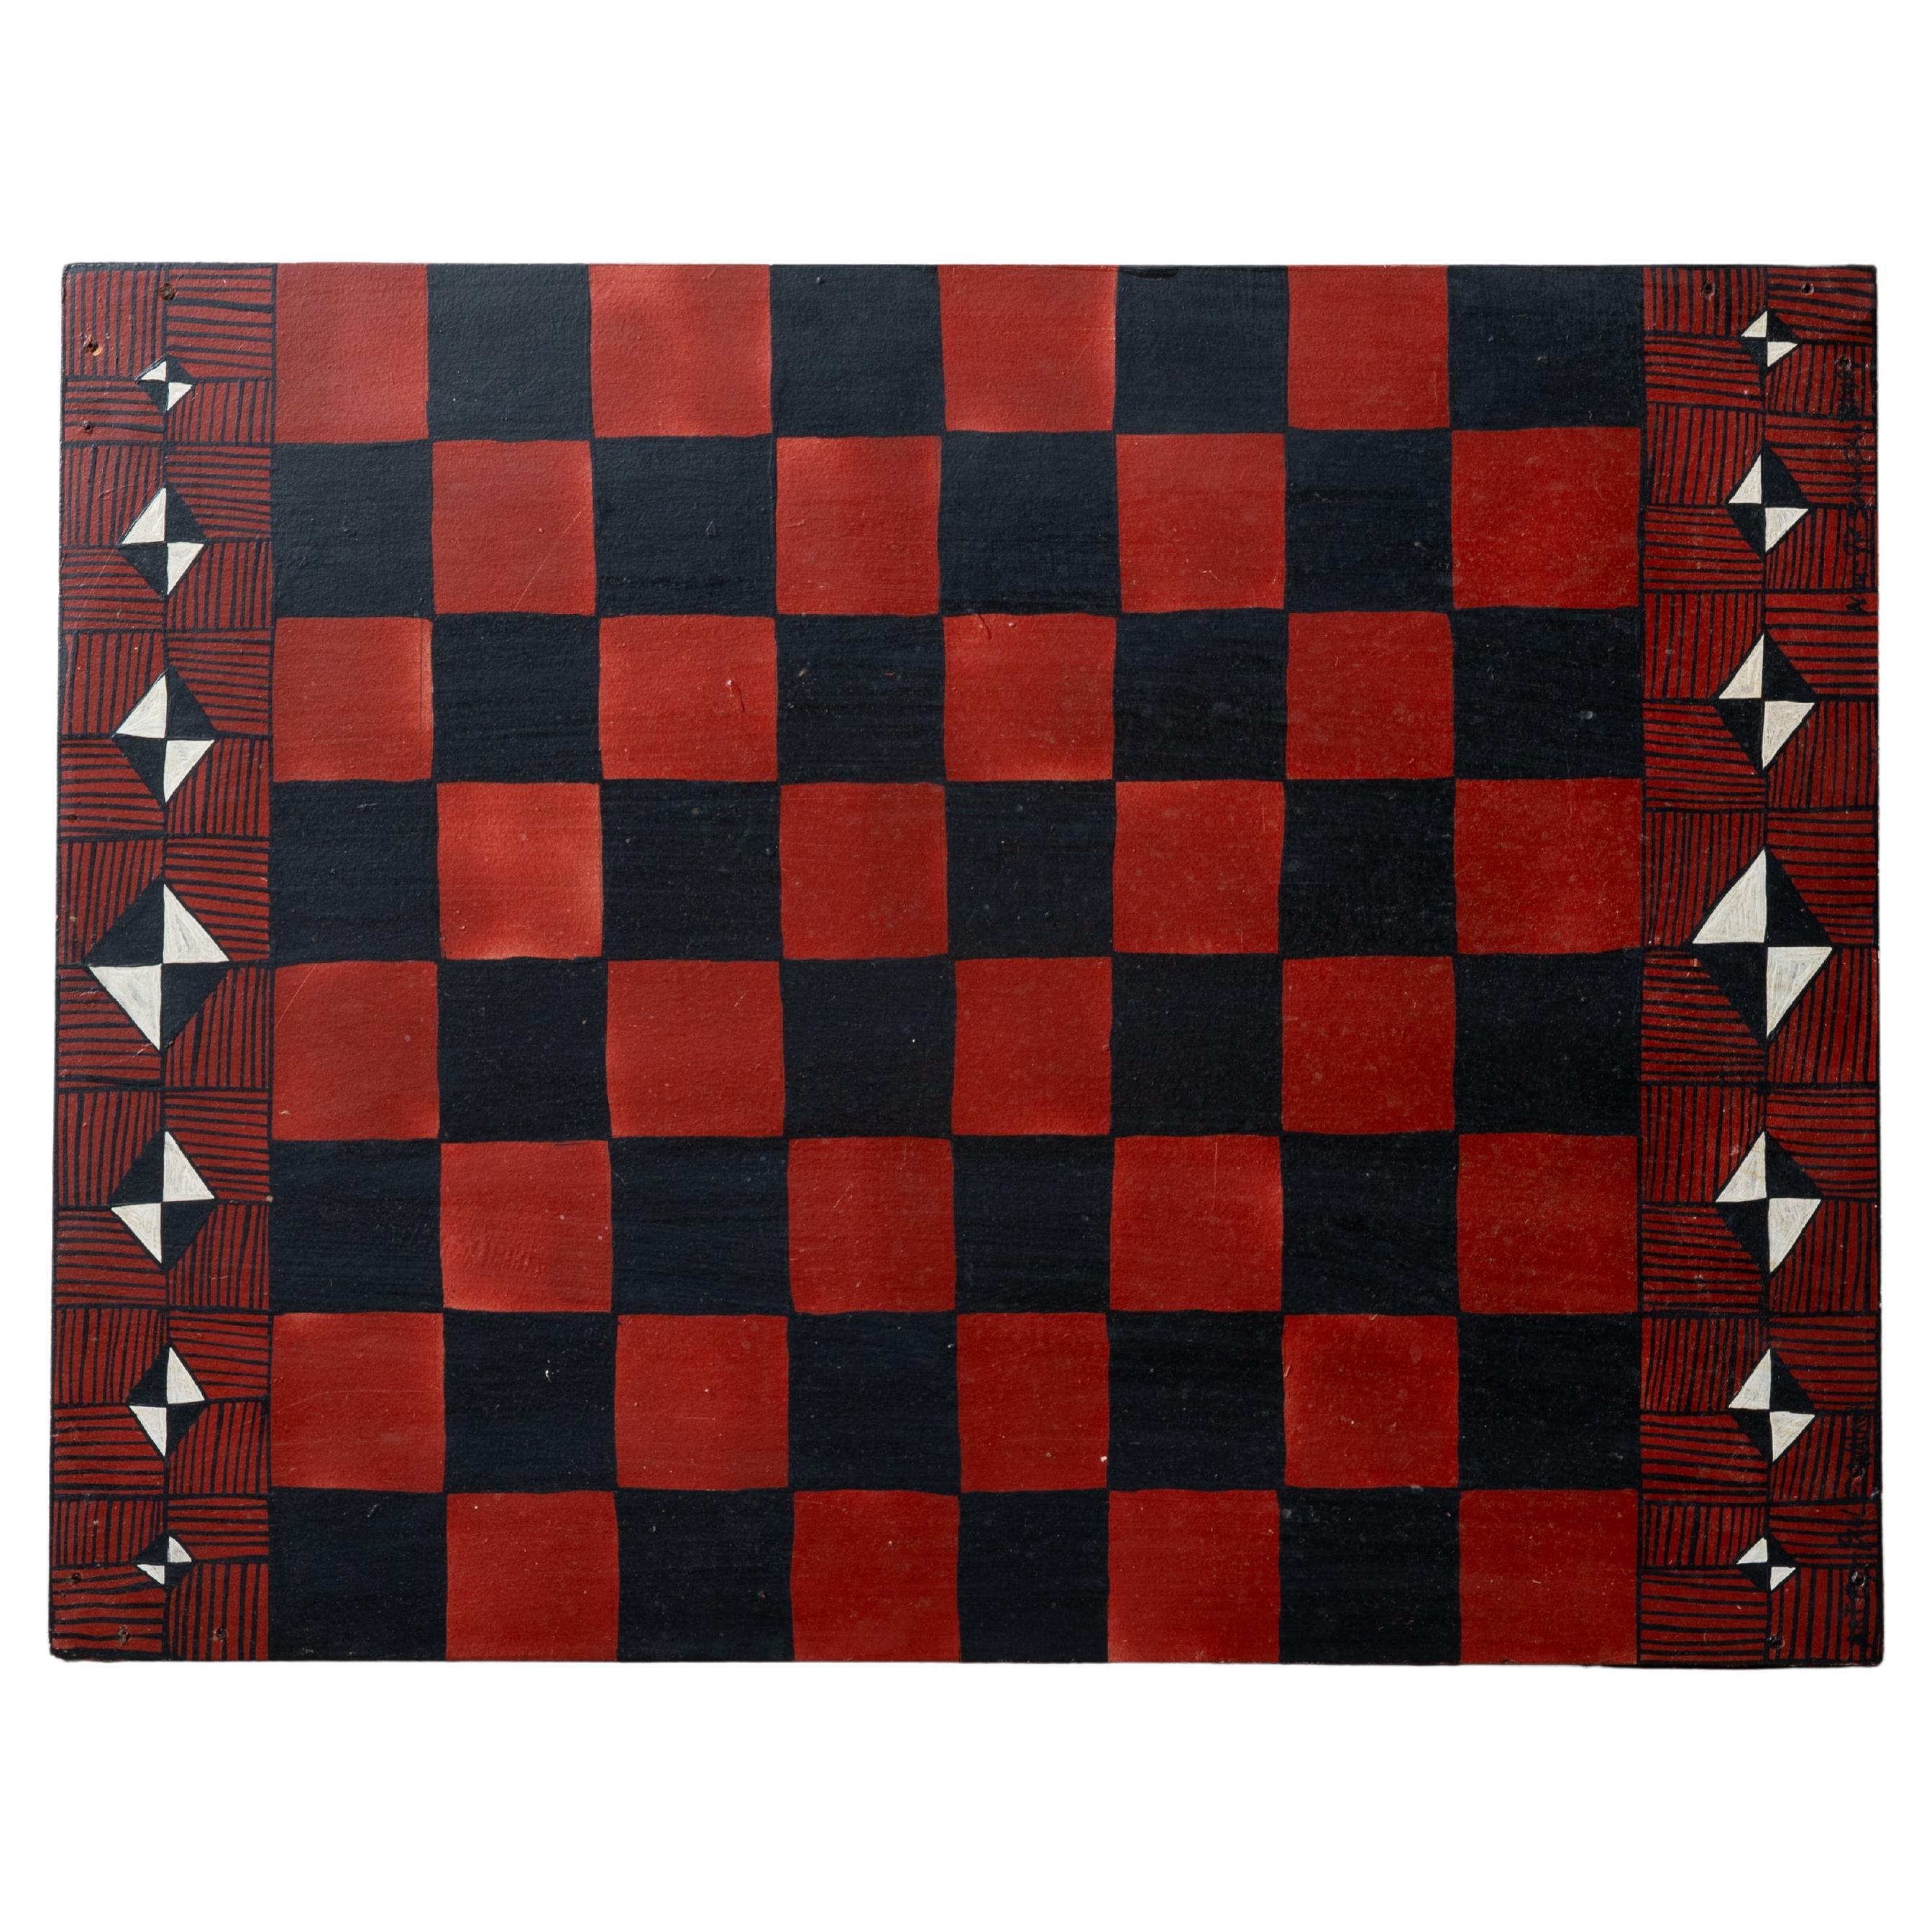 Paul Walker - Outsider Art Checkerboard For Sale